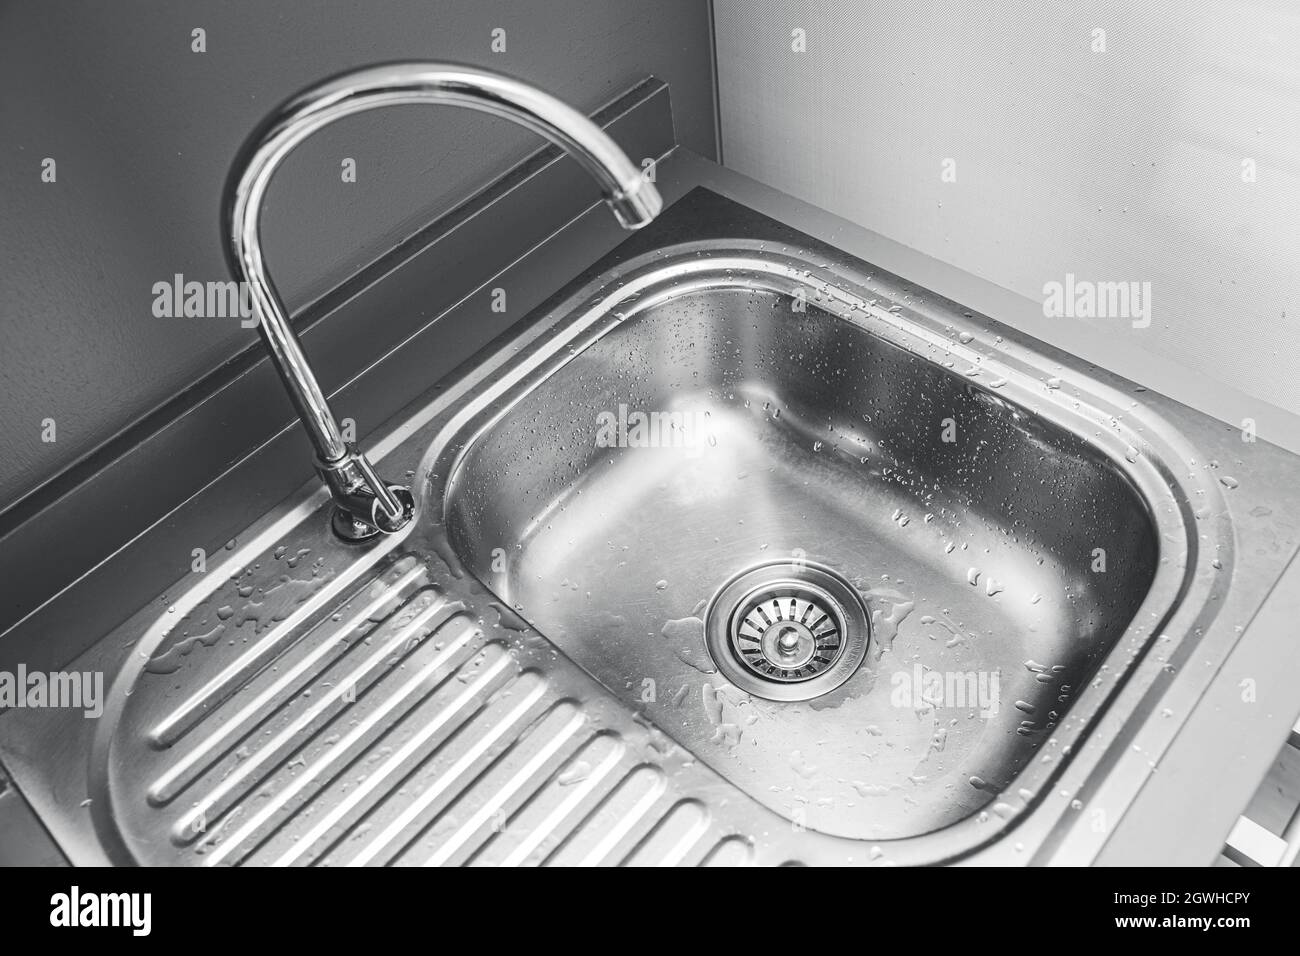 évier en acier inoxydable pour laver ou nettoyer les ustensiles dans la cuisine Banque D'Images